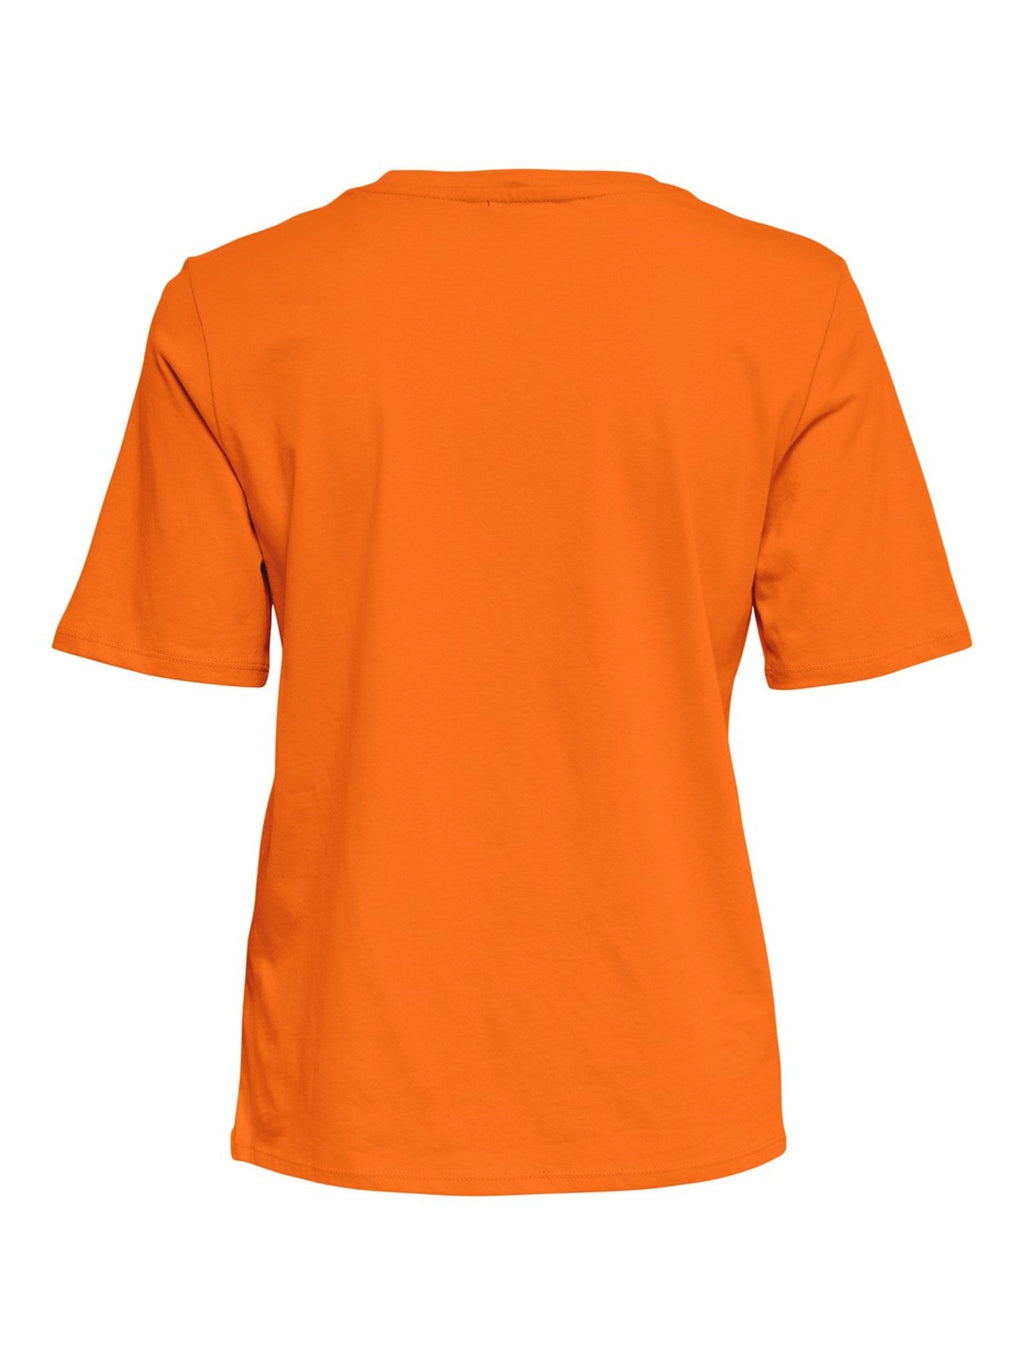 Tik nauji marškinėliai-„Oriole“